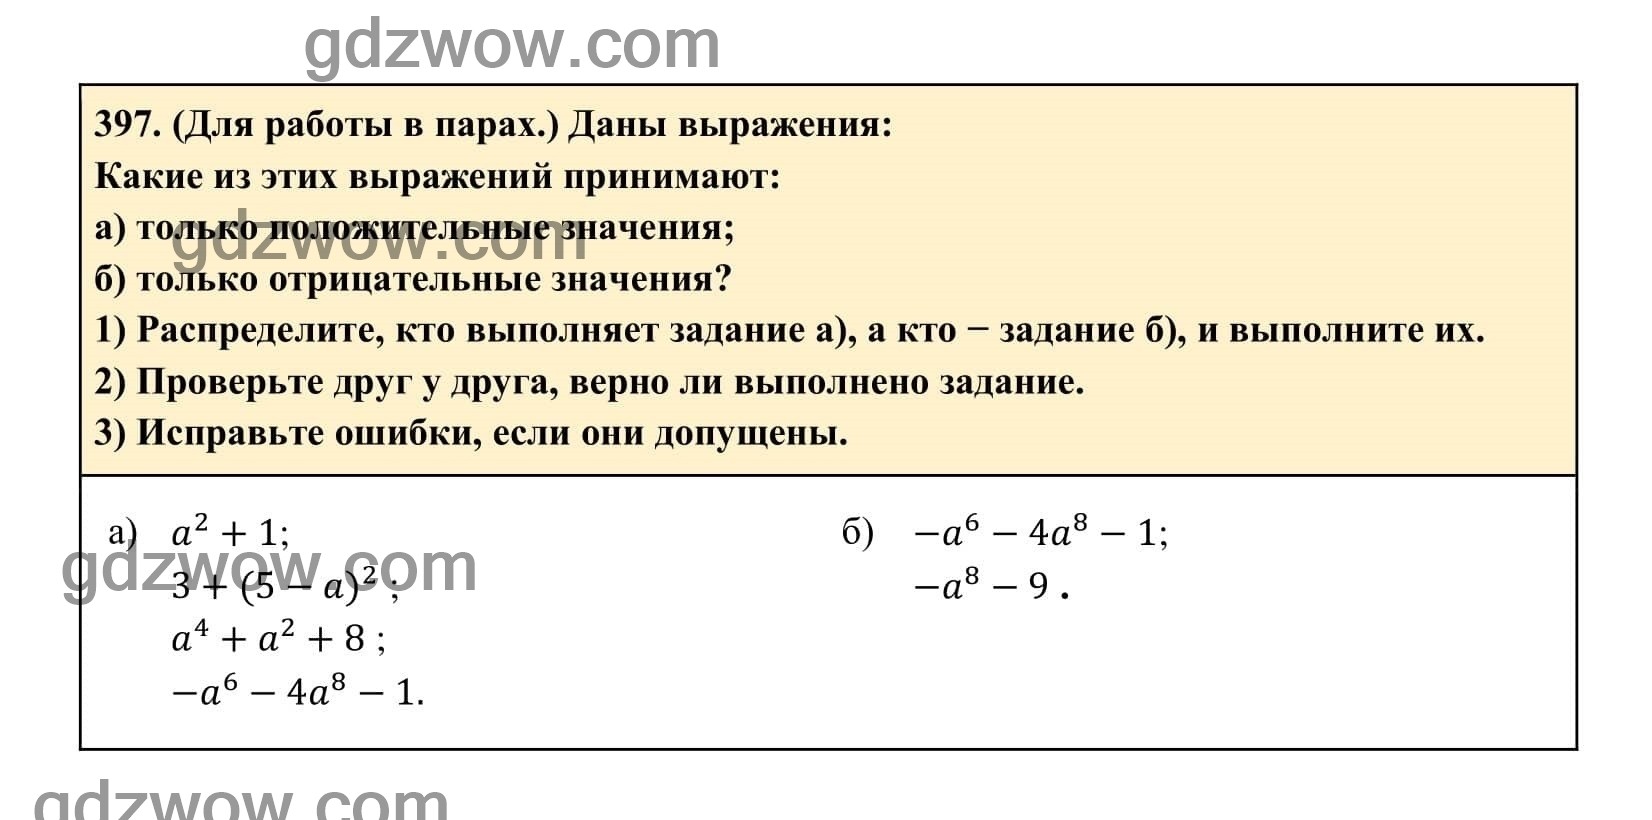 Упражнение 397 - ГДЗ по Алгебре 7 класс Учебник Макарычев (решебник) - GDZwow